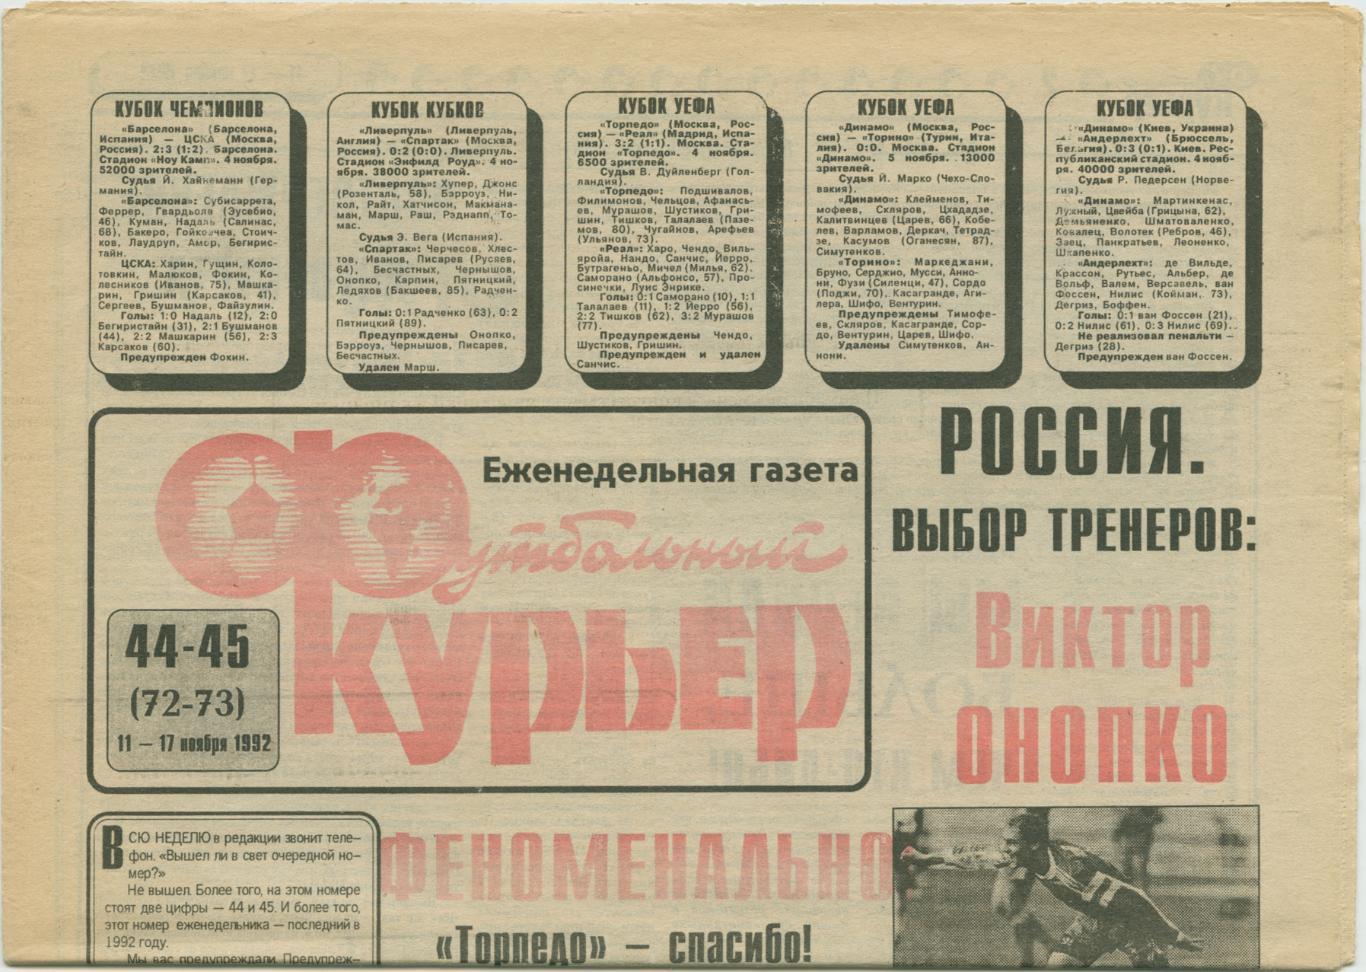 Еженедельник Футбольный курьер, 11-17.11.1992, № 44-45.